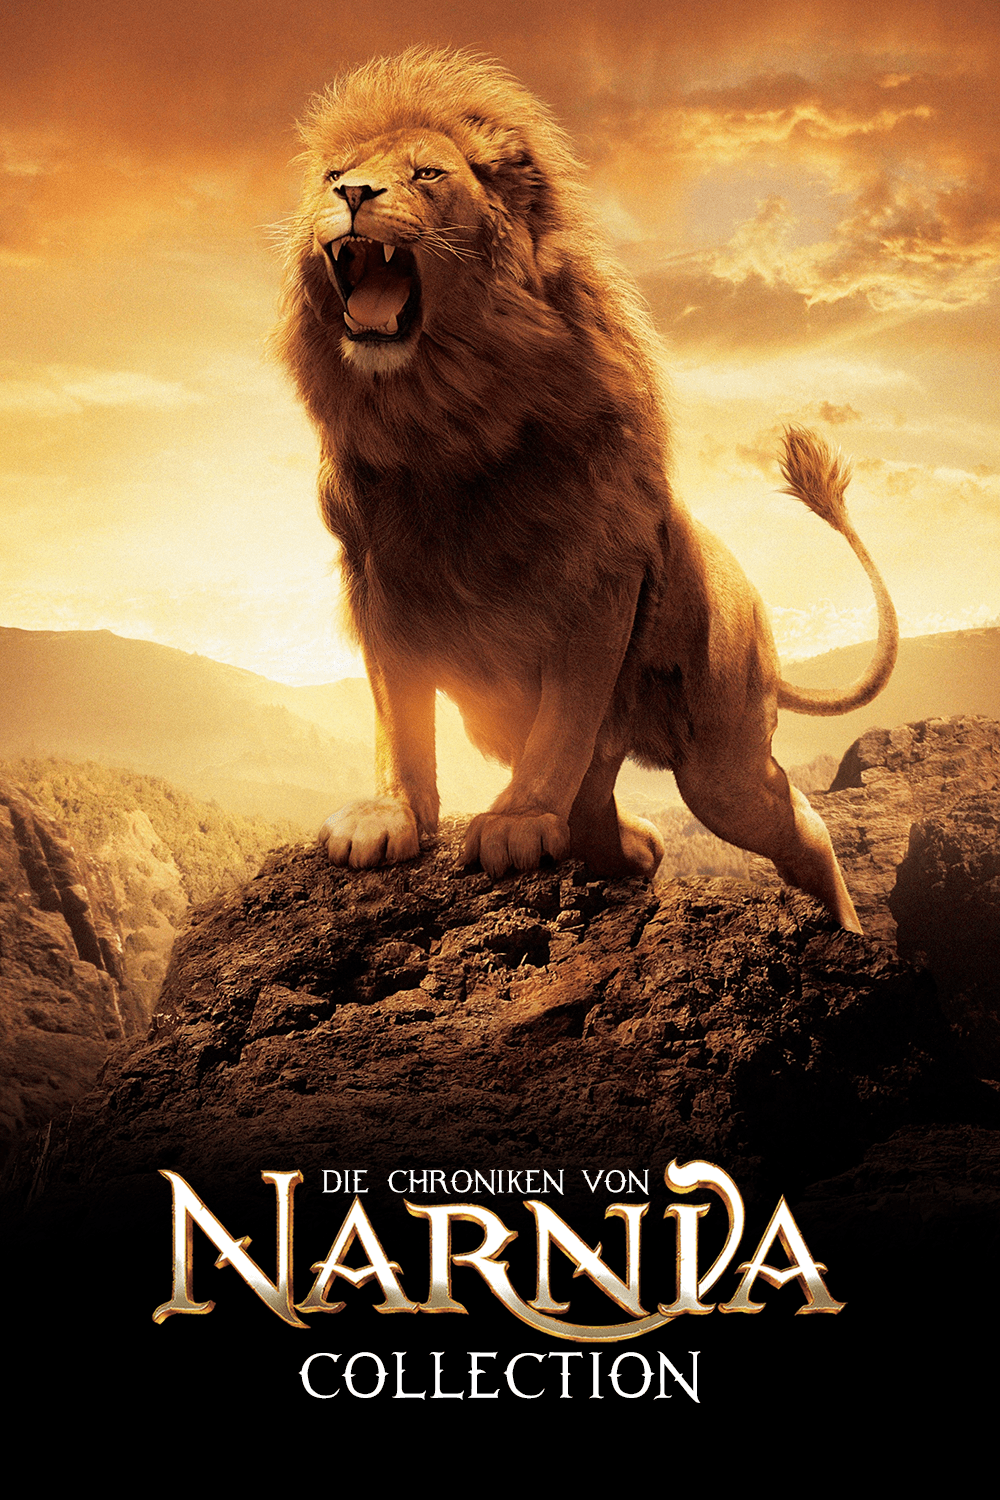 دانلود کالکشن فیلم نارنیا The Chronicles of Narnia